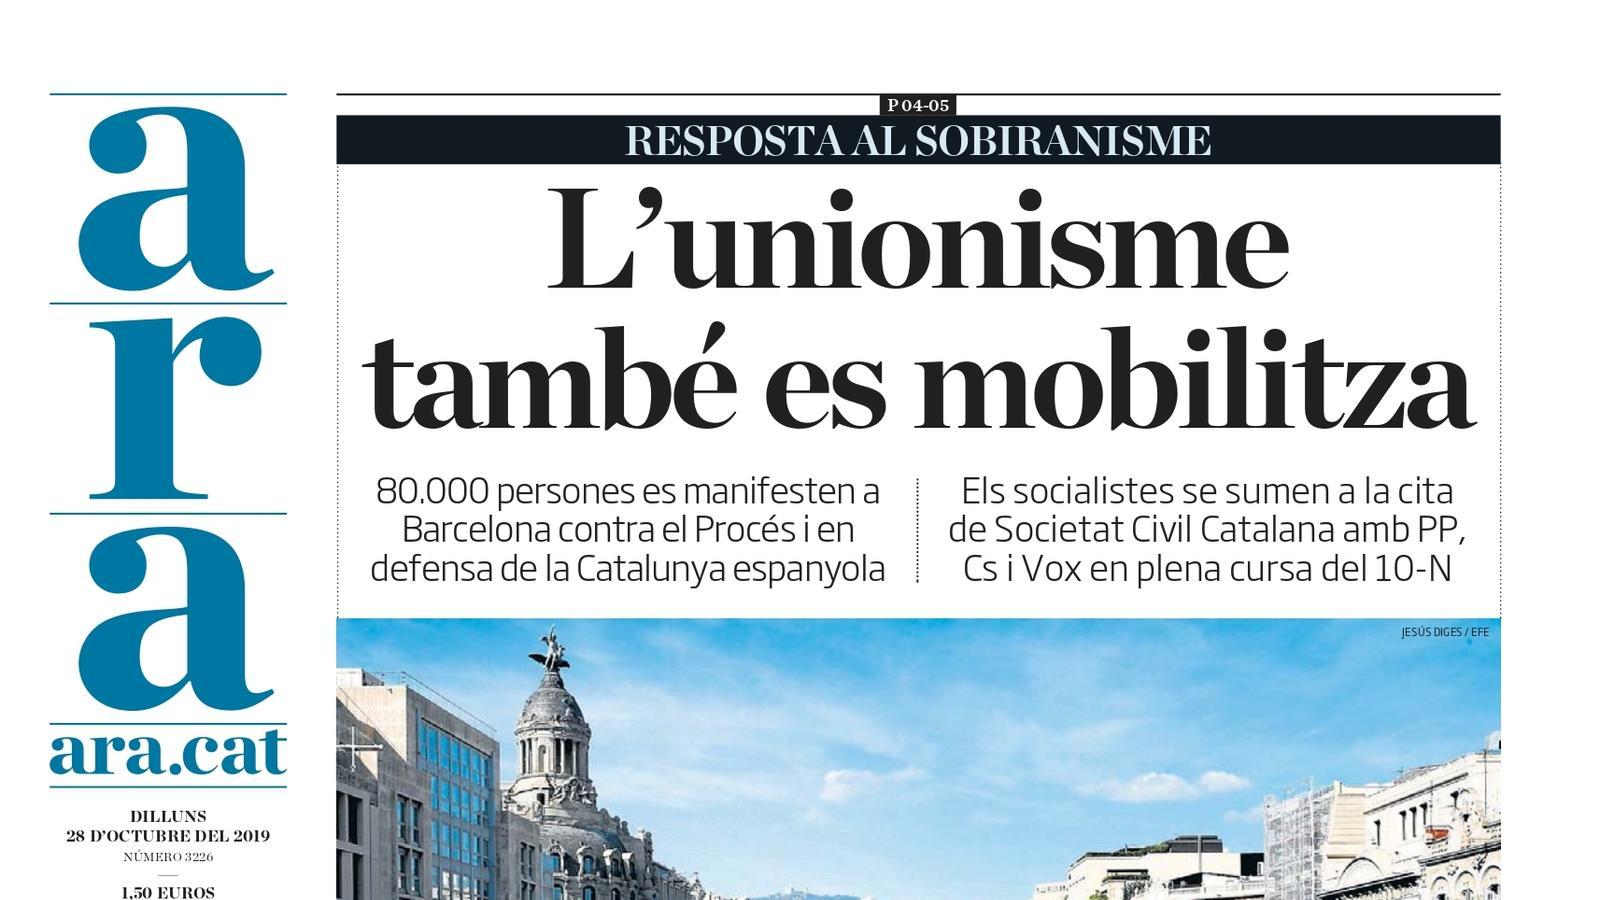 "L'unionisme també es mobilitza", la portada de l'ARA